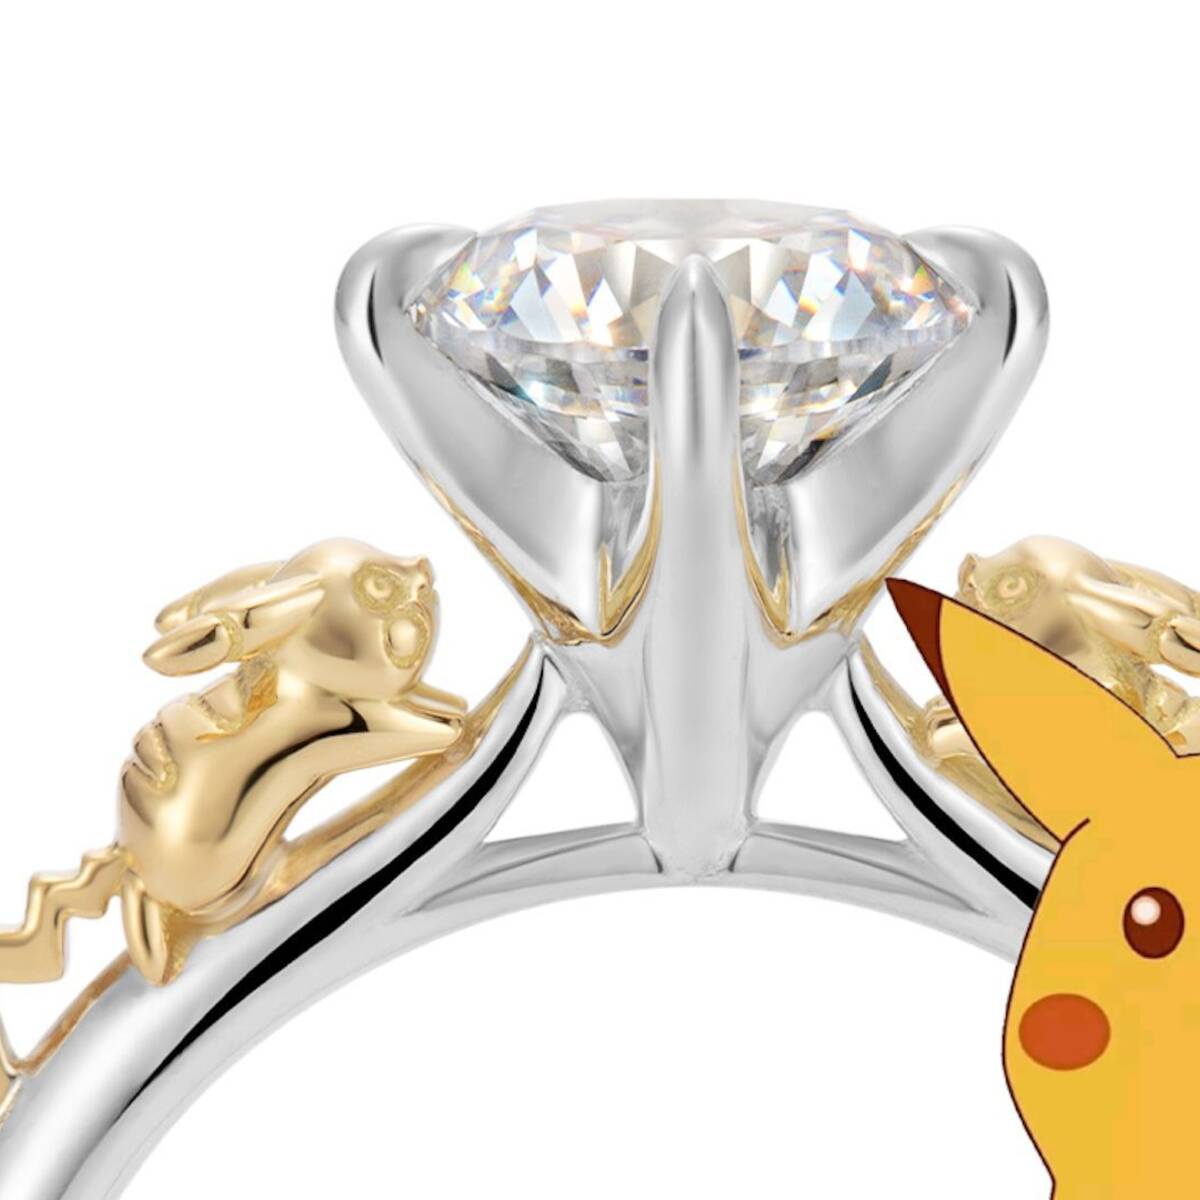 Pokémon: Así es el lujoso anillo de Pikachu que cuesta más que la saga  entera de juegos - Vandal Random